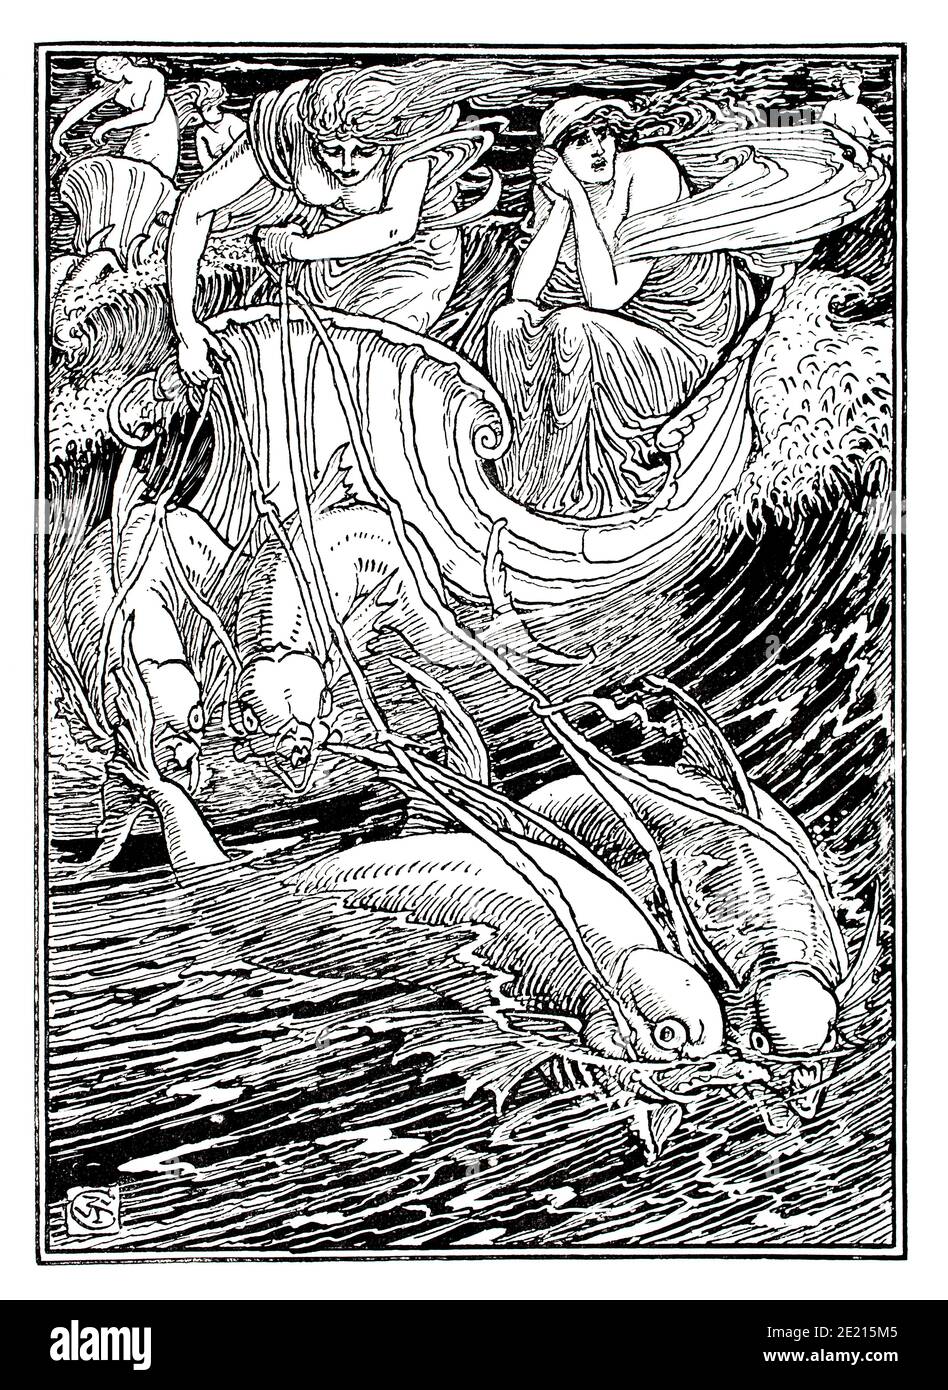 Illustrazione di Spencer's Feyrie Queen, shell boat trainato da pesce, disegno di linea di Walter Crane dal 1897 The Studio An Illustrated Magazine of Fi Foto Stock